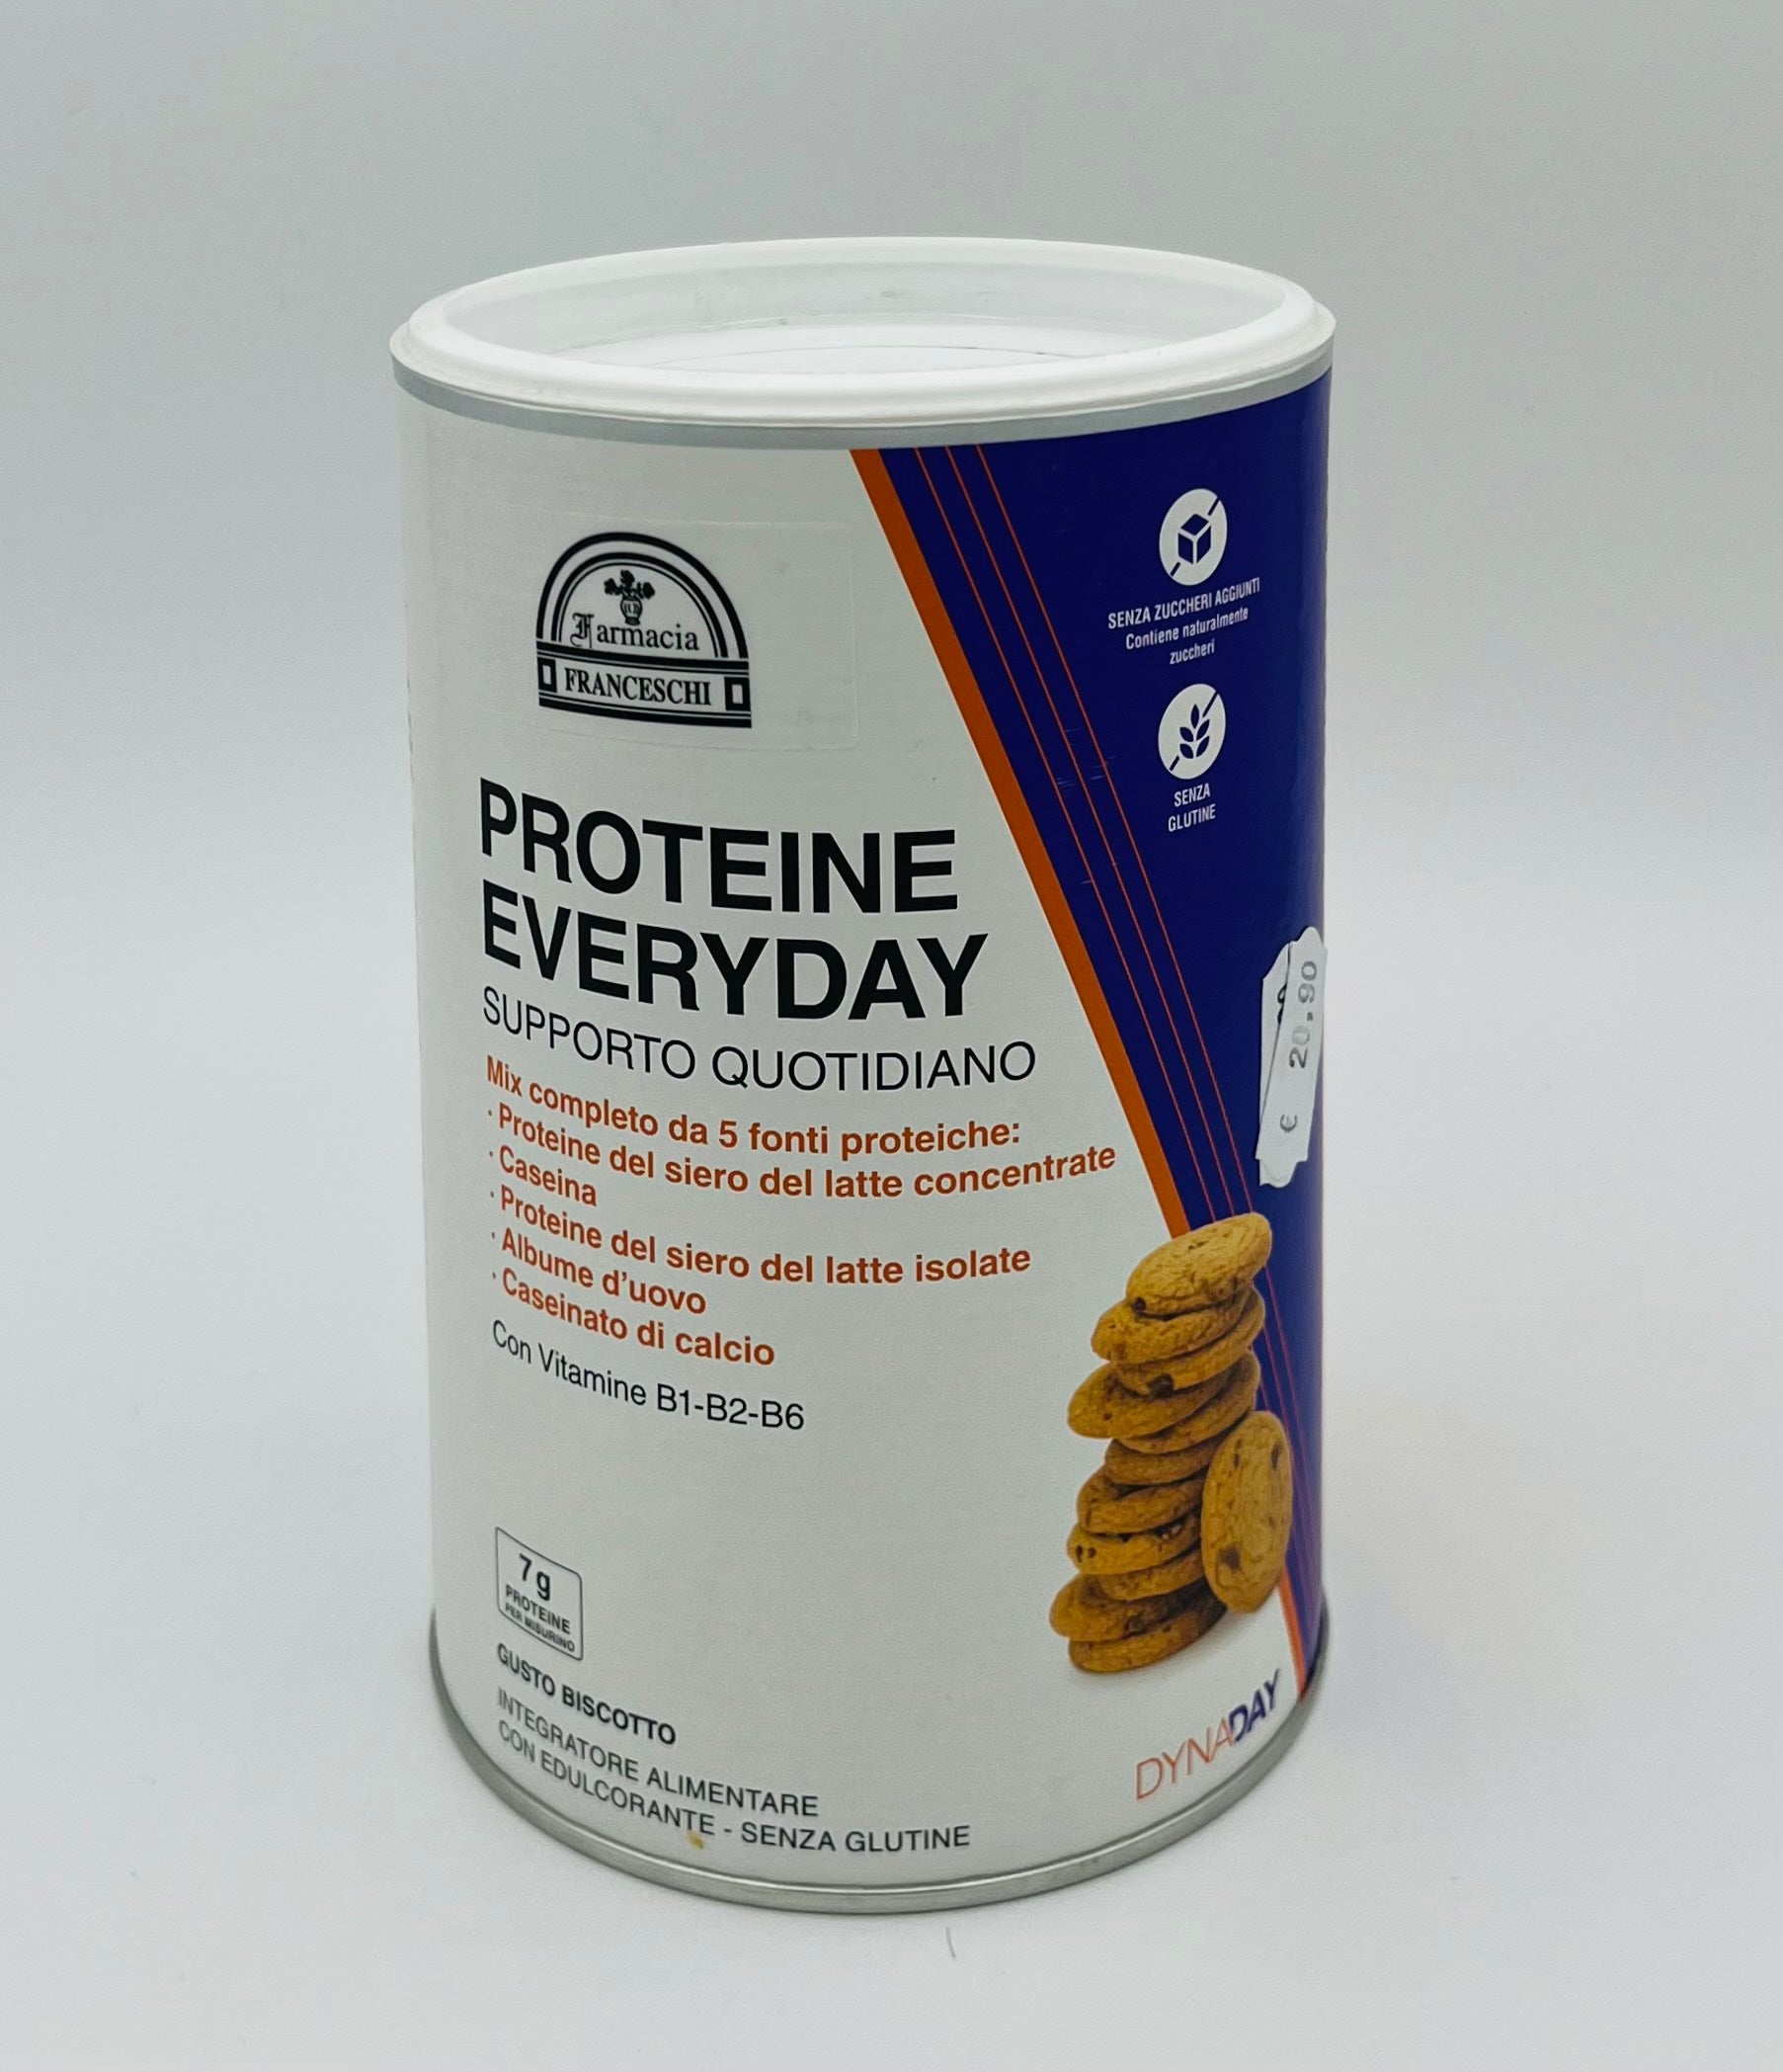 Proteine EVERYDAY